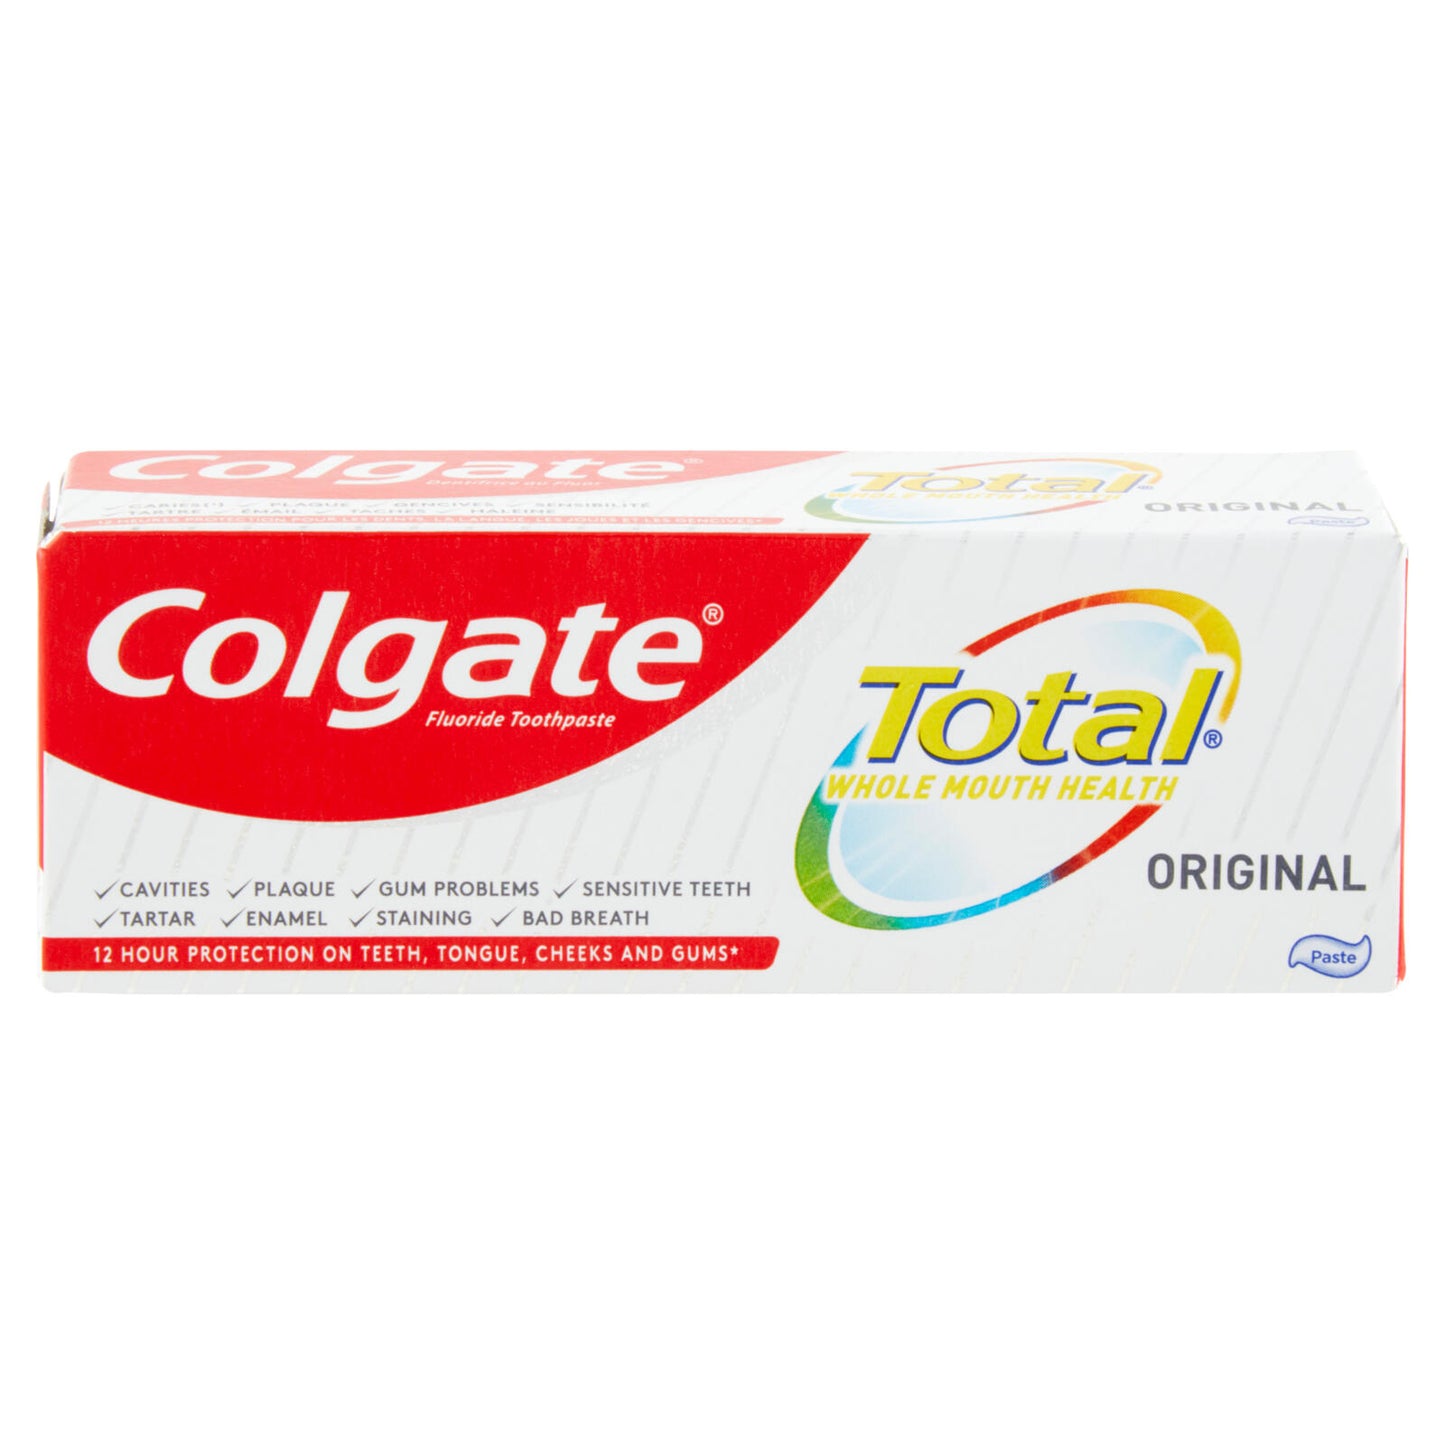 Colgate dentifricio Total Original protezione 24h 20 ml